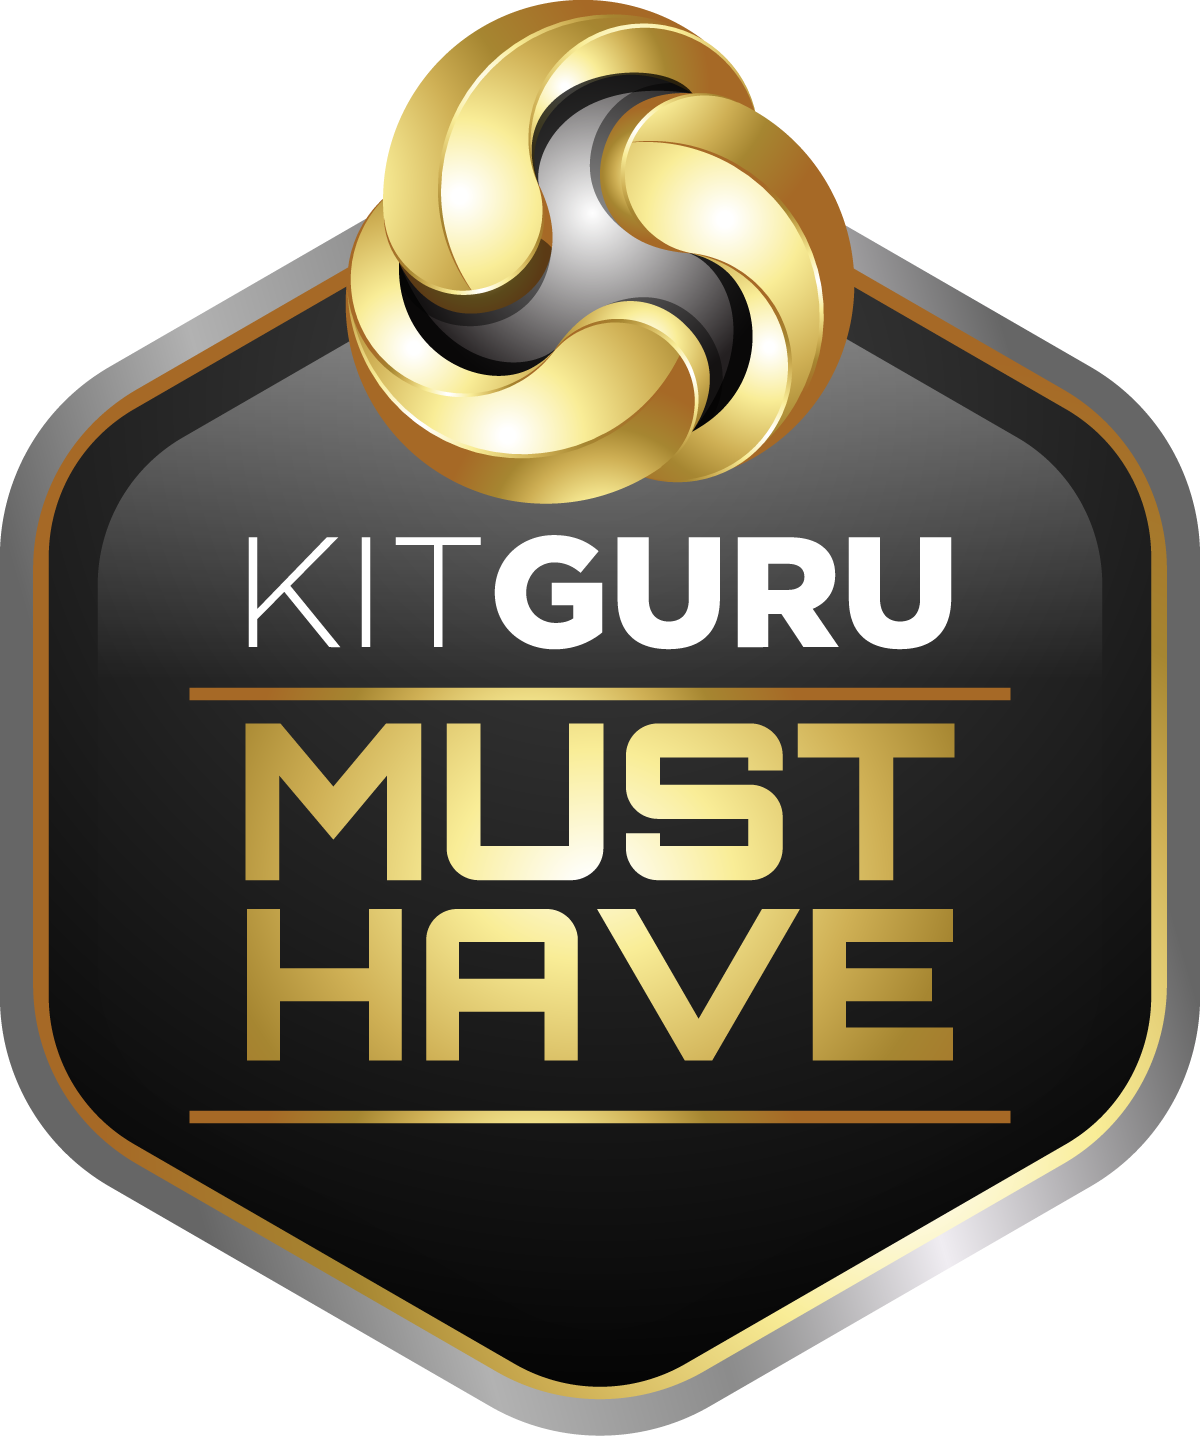 Kitguru-must-have